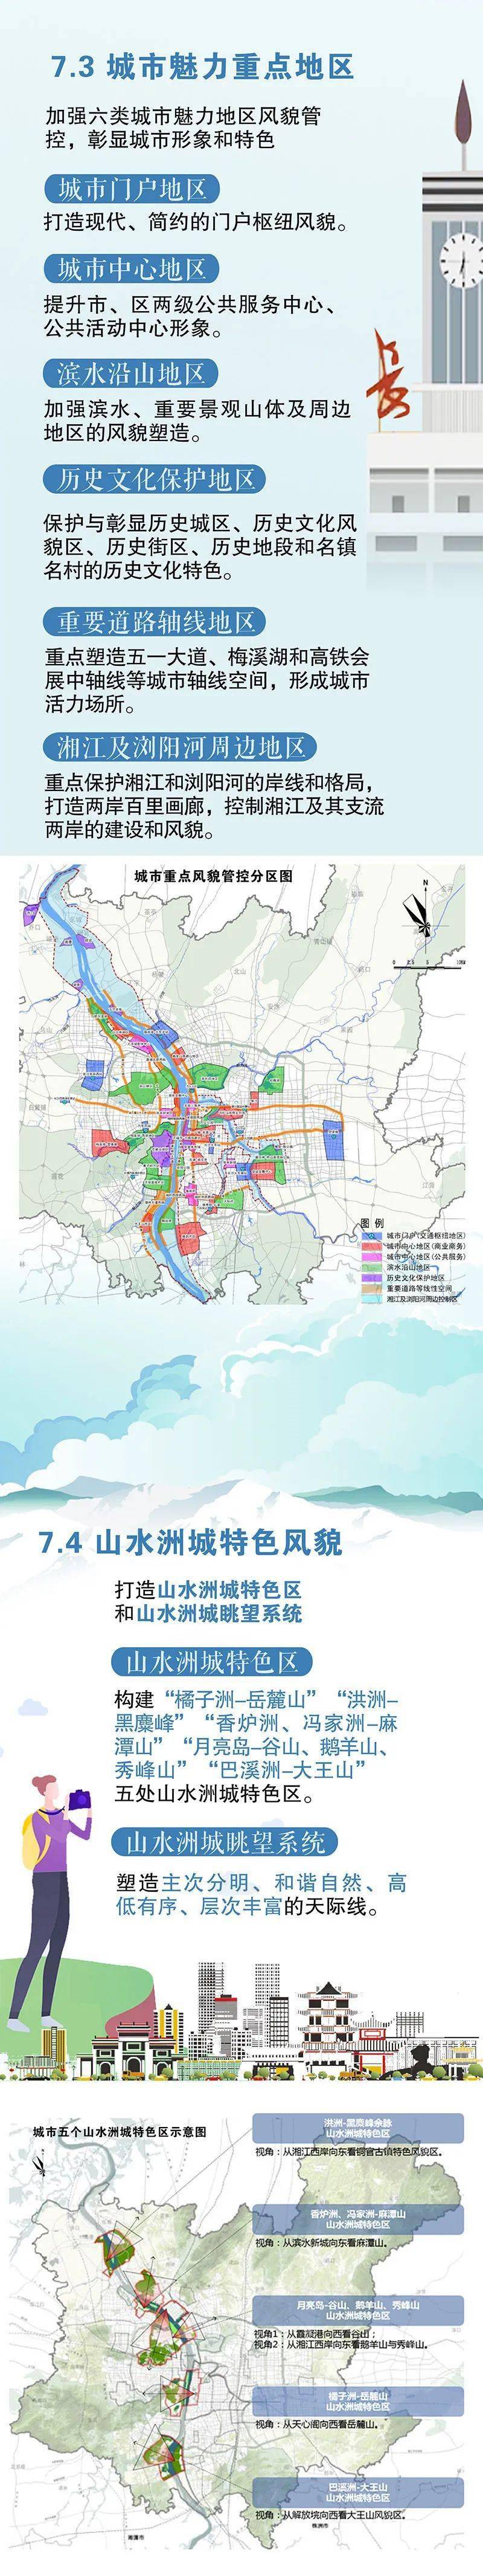 长沙城区规划地图图片